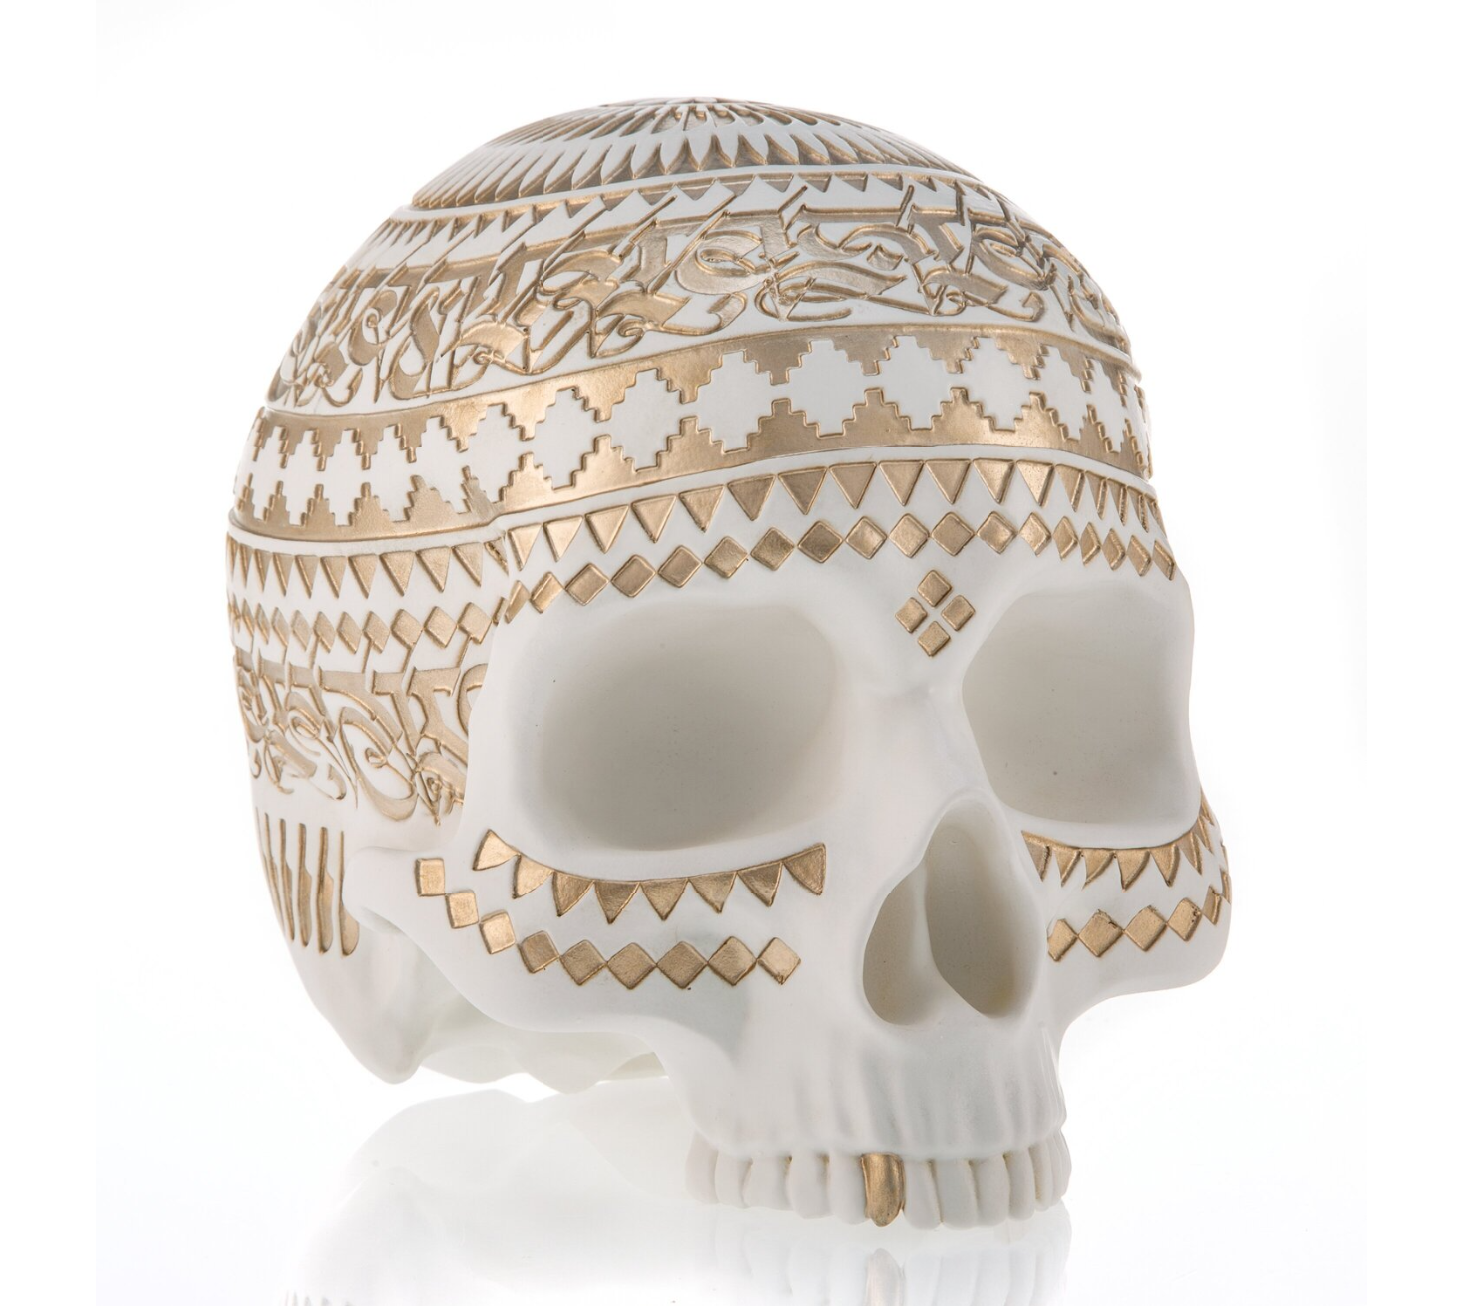 White Memento Mori Skull by Cryptik